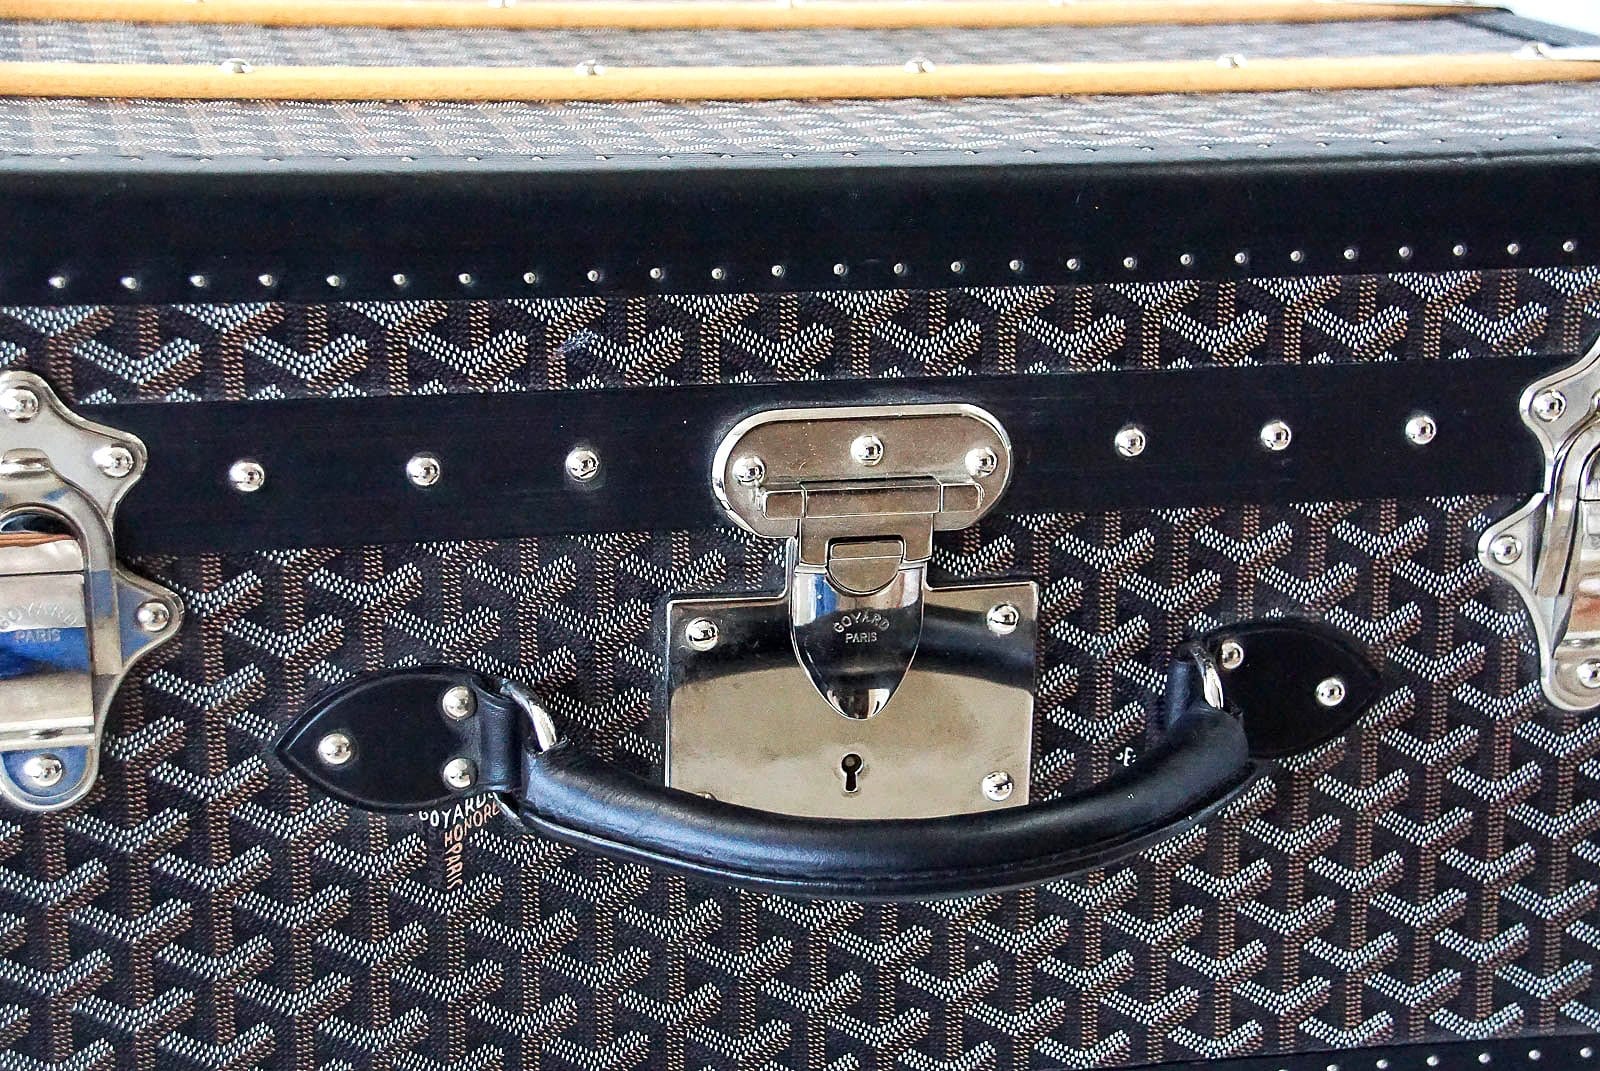 Monogrammed Goyard trunks.  Goyard bag, Goyard trunk, Goyard luggage